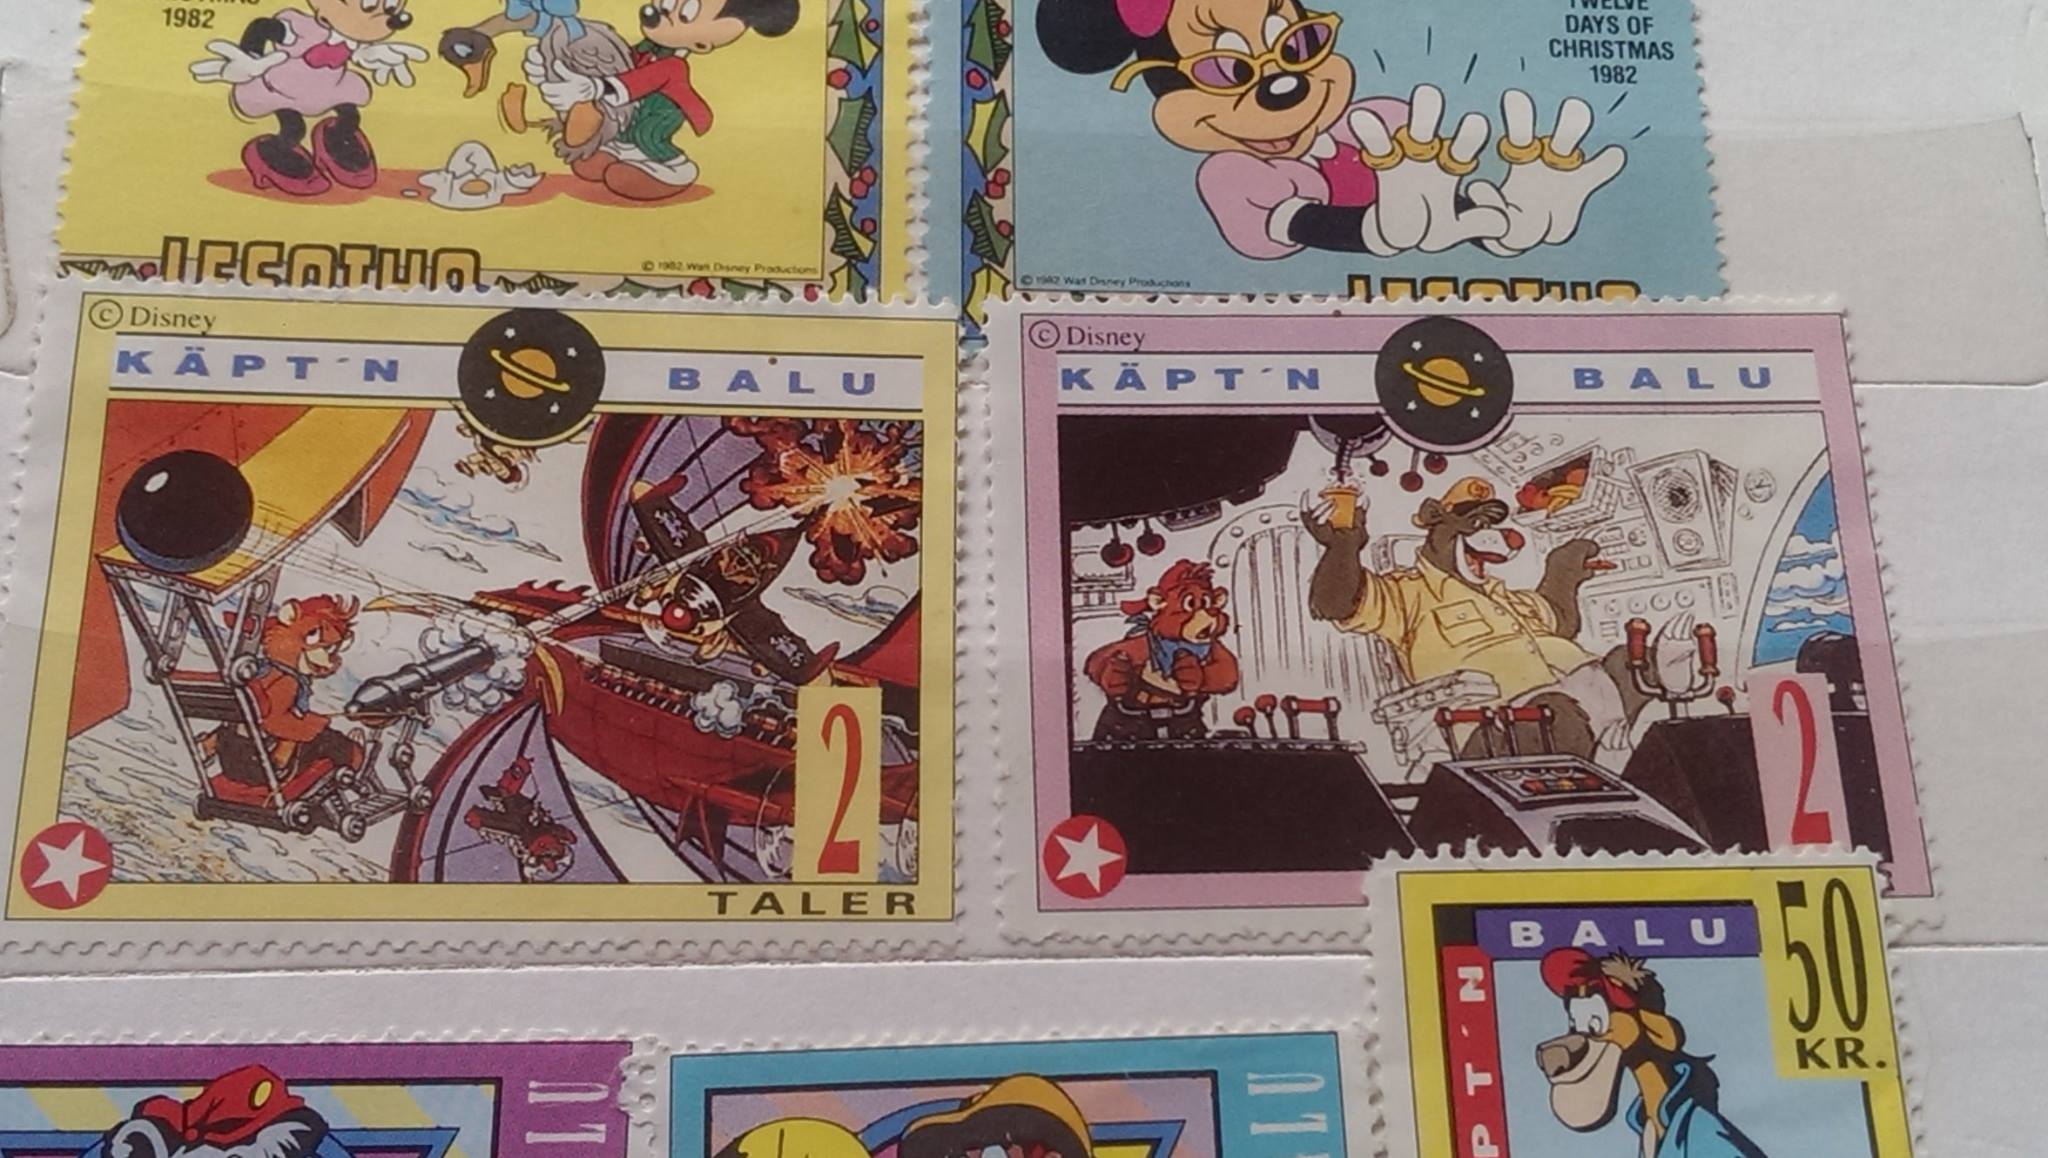 Poštovní známky s Disney seriály 3